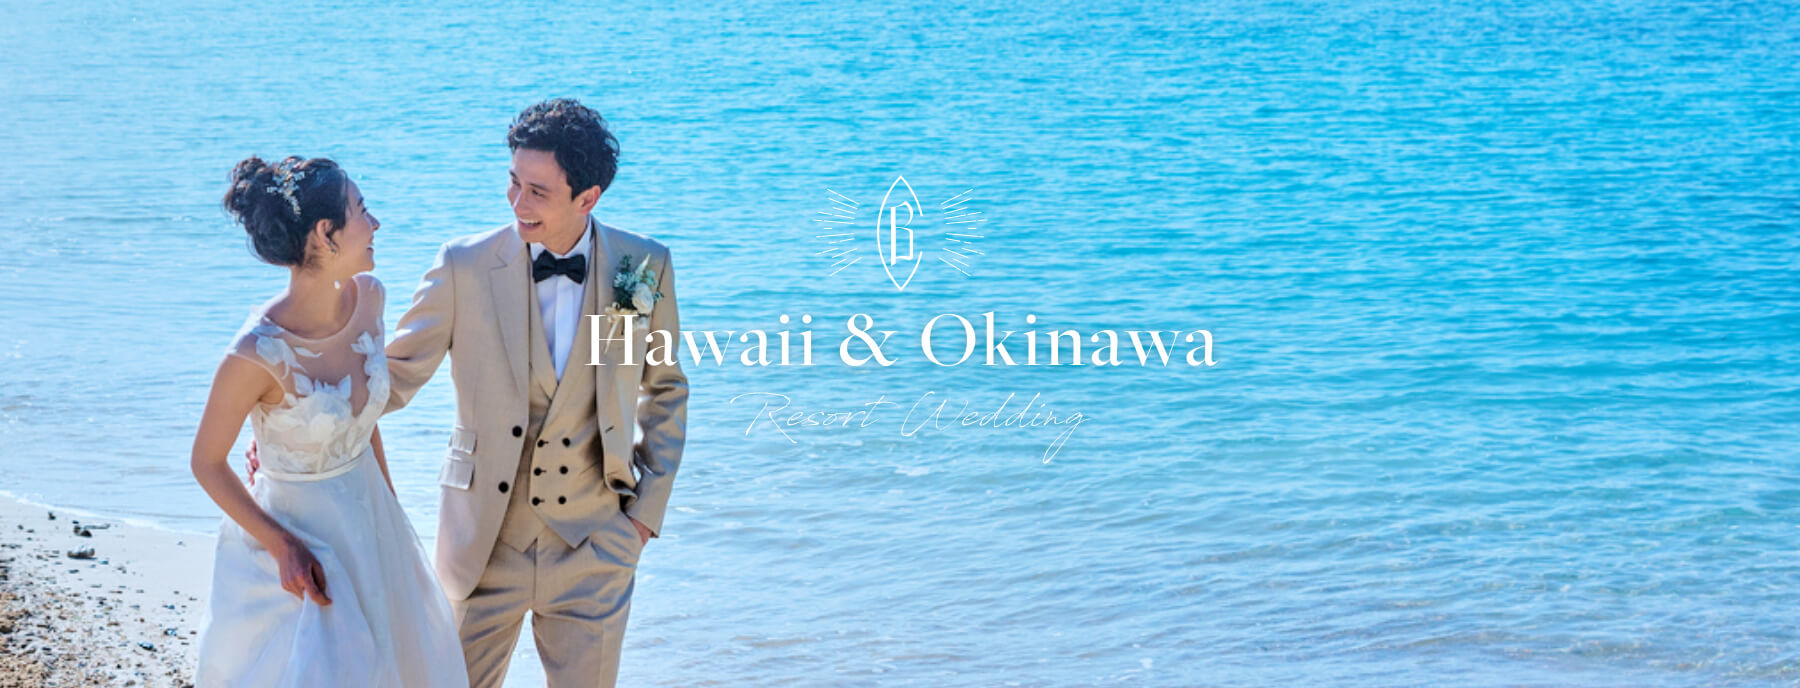 Hawaii & Okinawa Resort Wedding